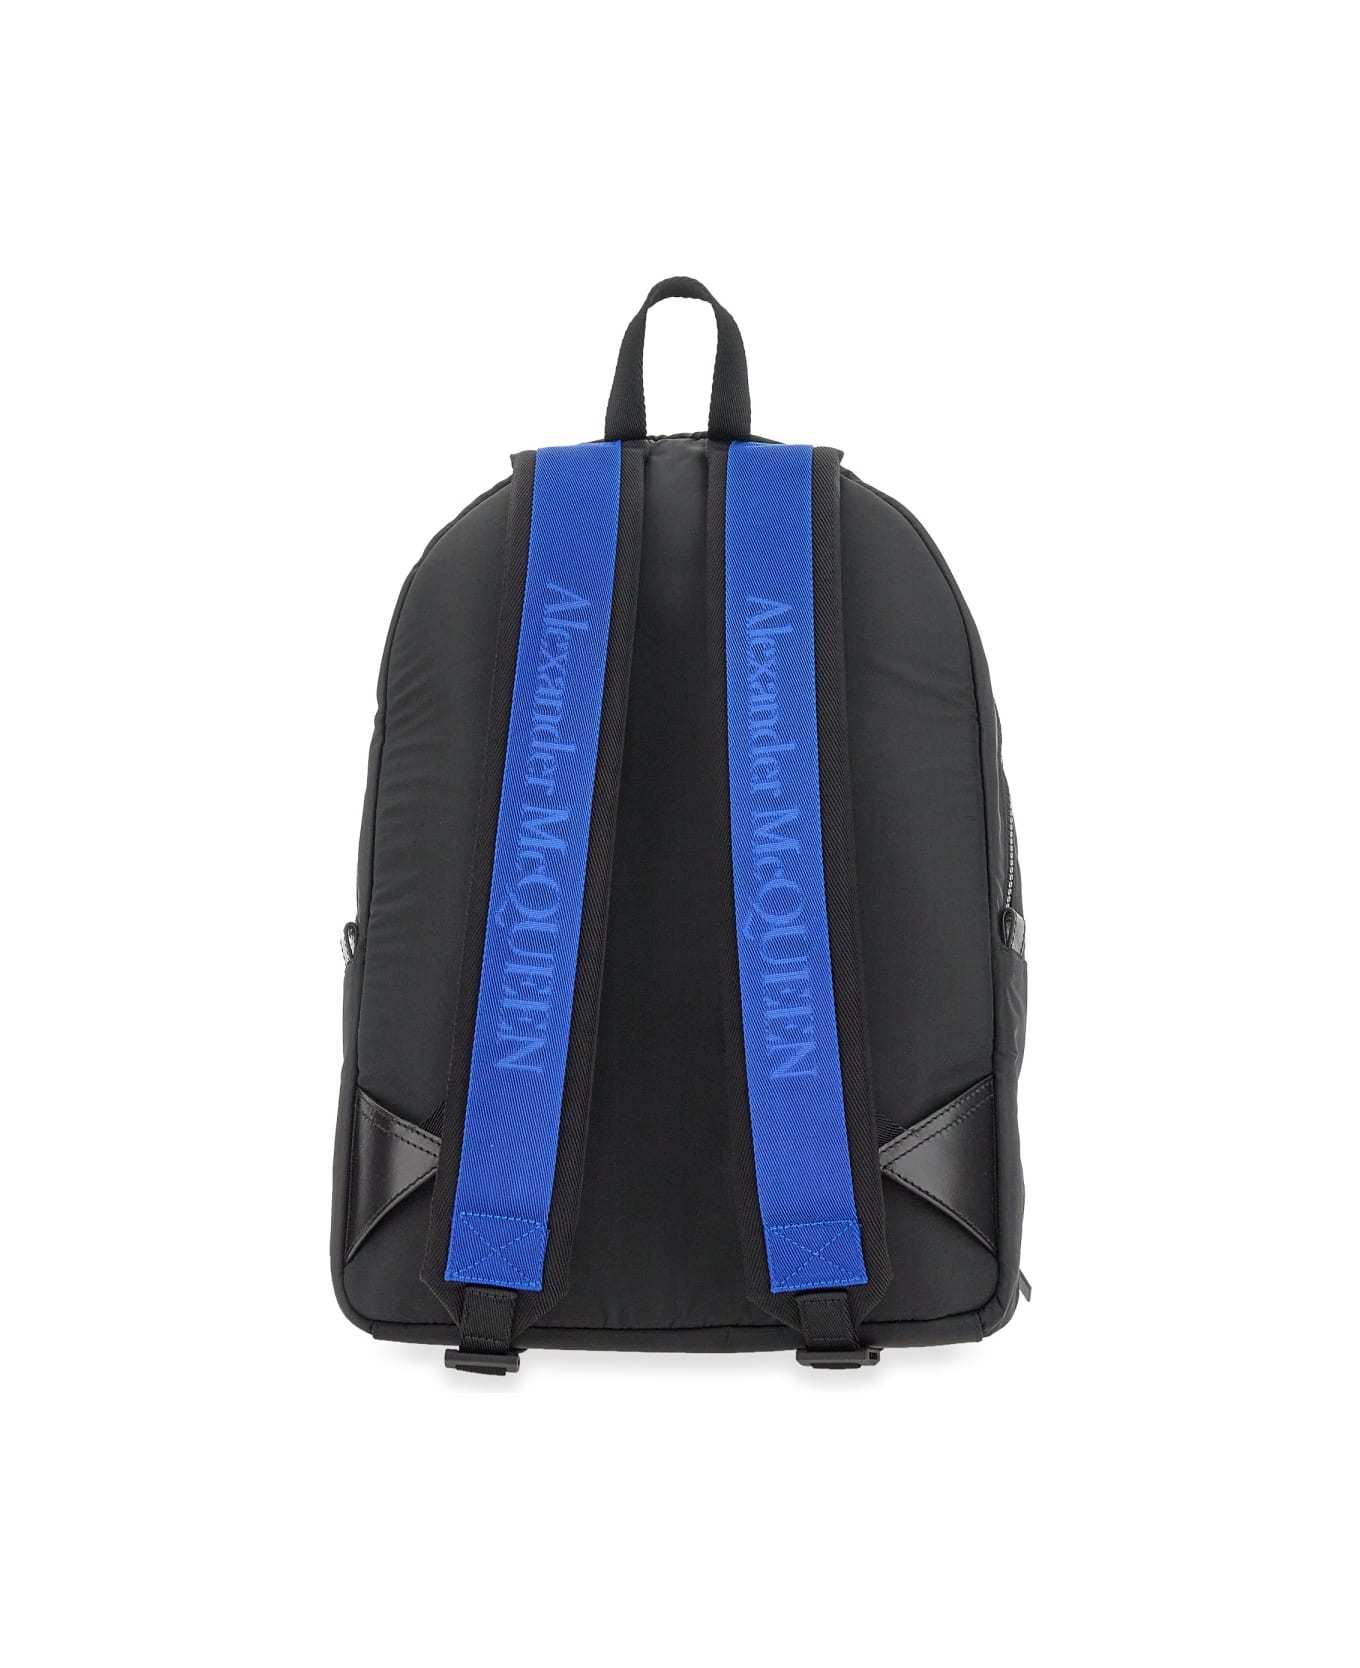 Alexander McQueen Metropolitan Backpack - BLACK